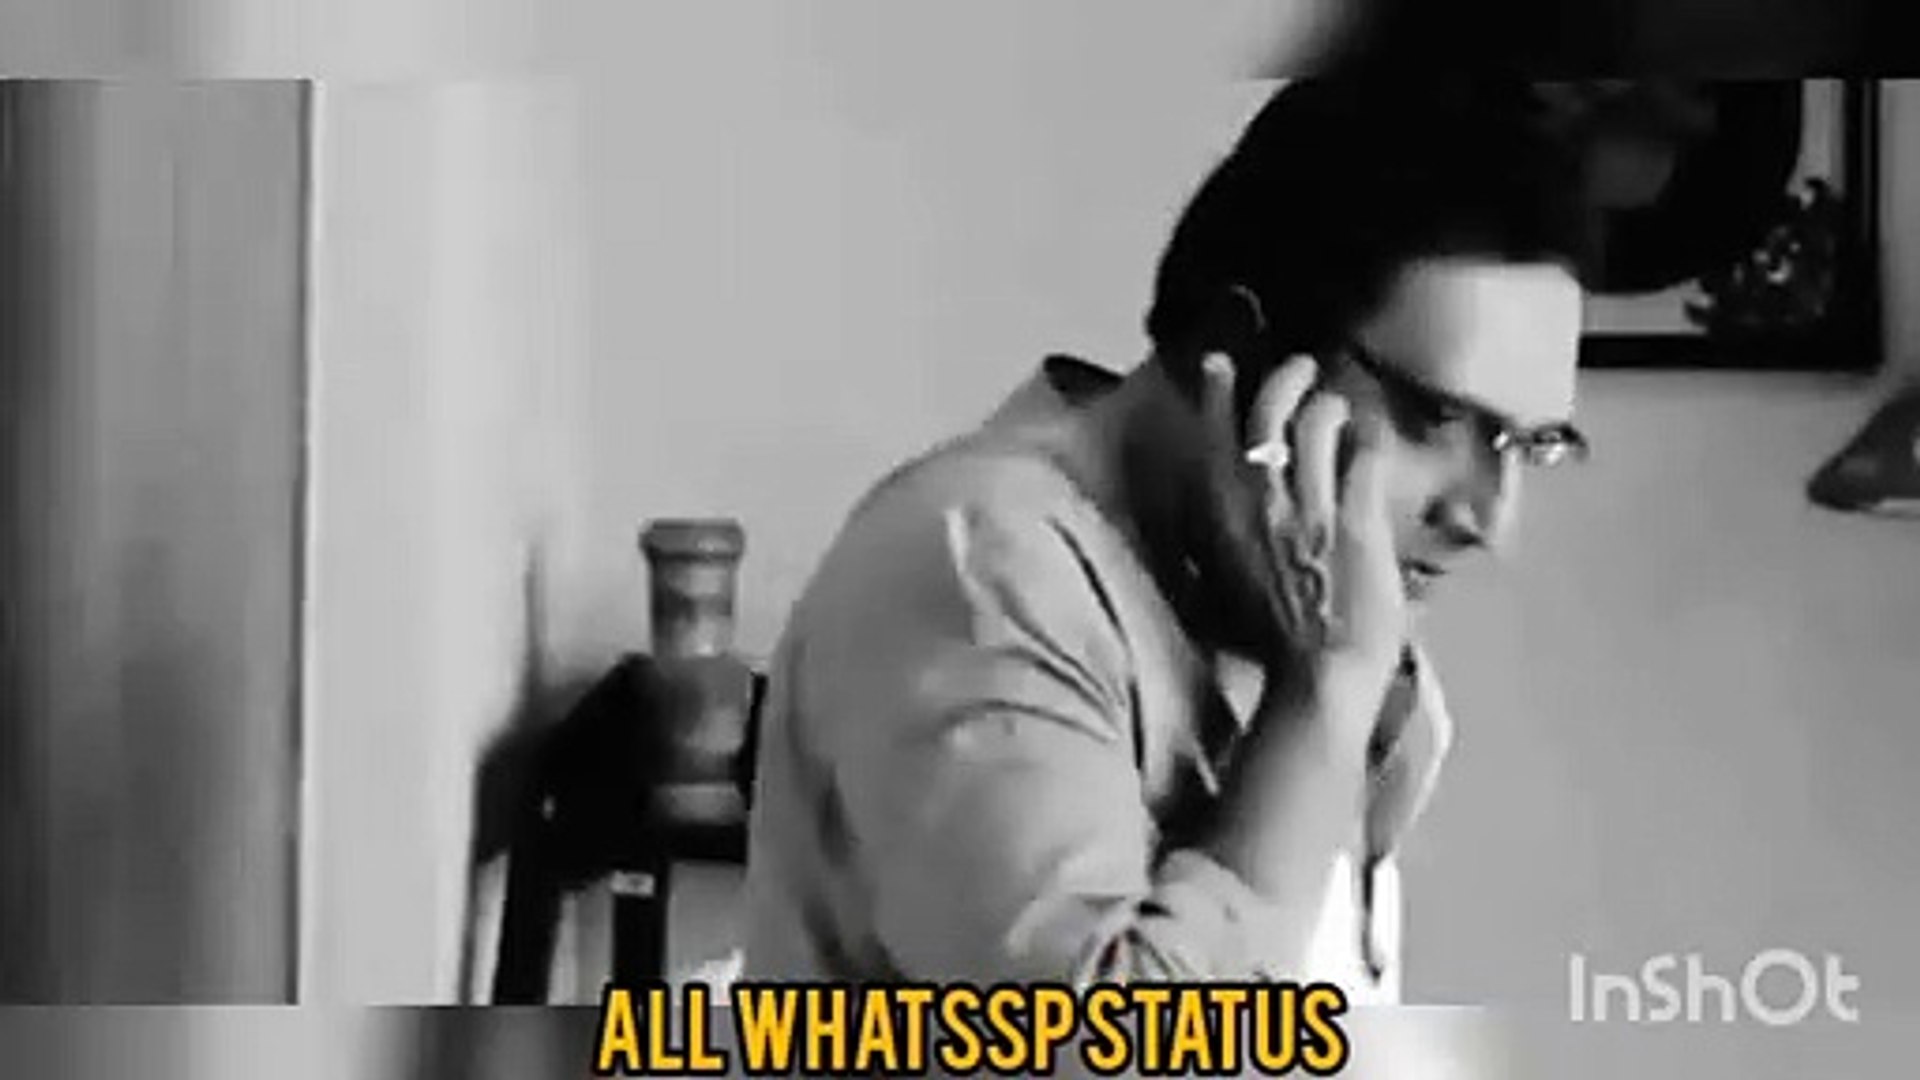 WhatsApp status video #whatsApp status